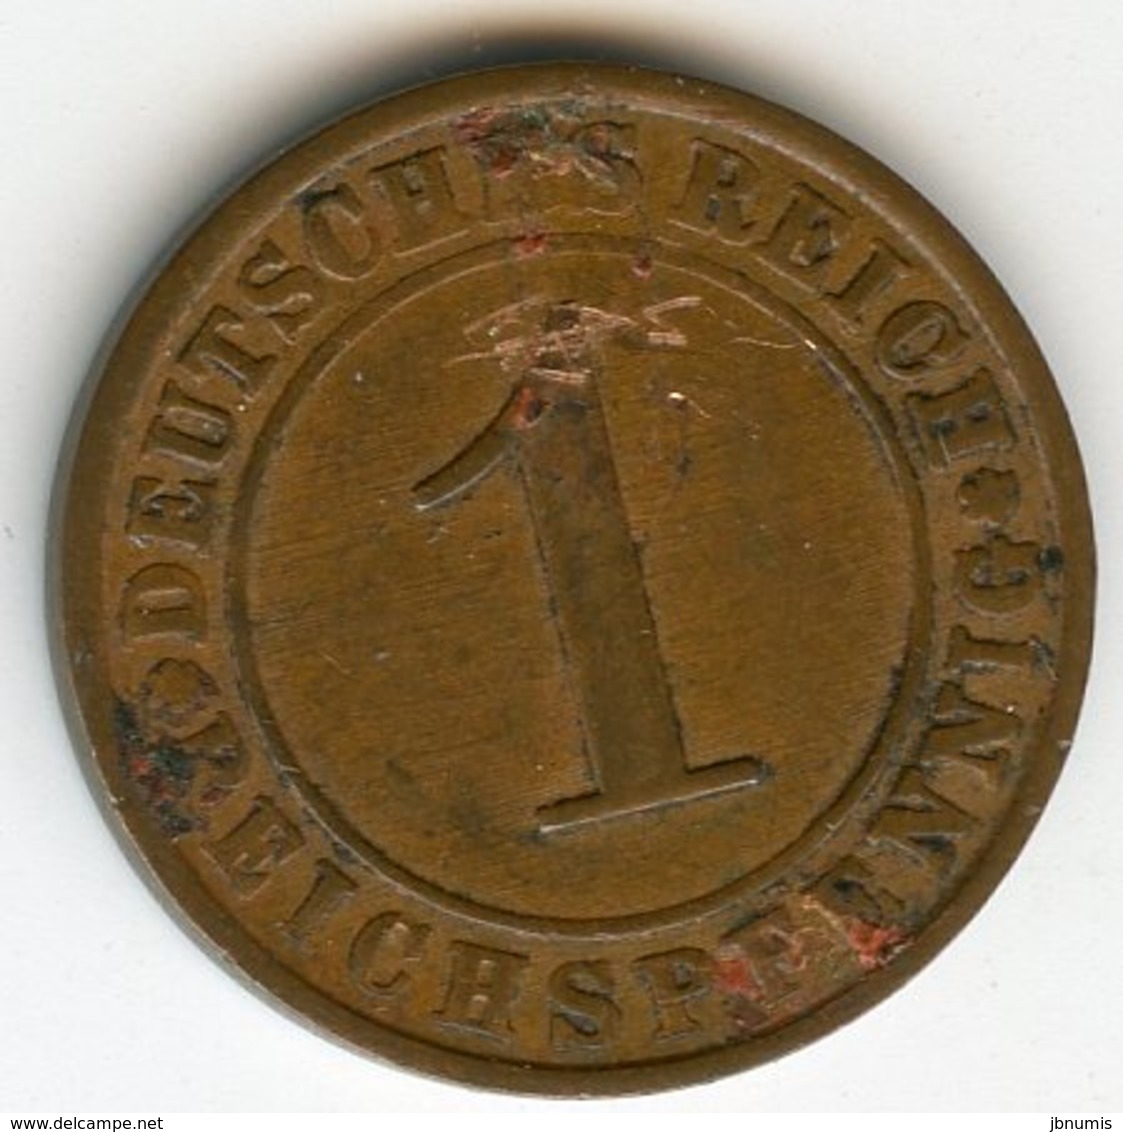 Allemagne Germany 1 Reichspfennig 1927 E J 313 KM 37 - 1 Rentenpfennig & 1 Reichspfennig